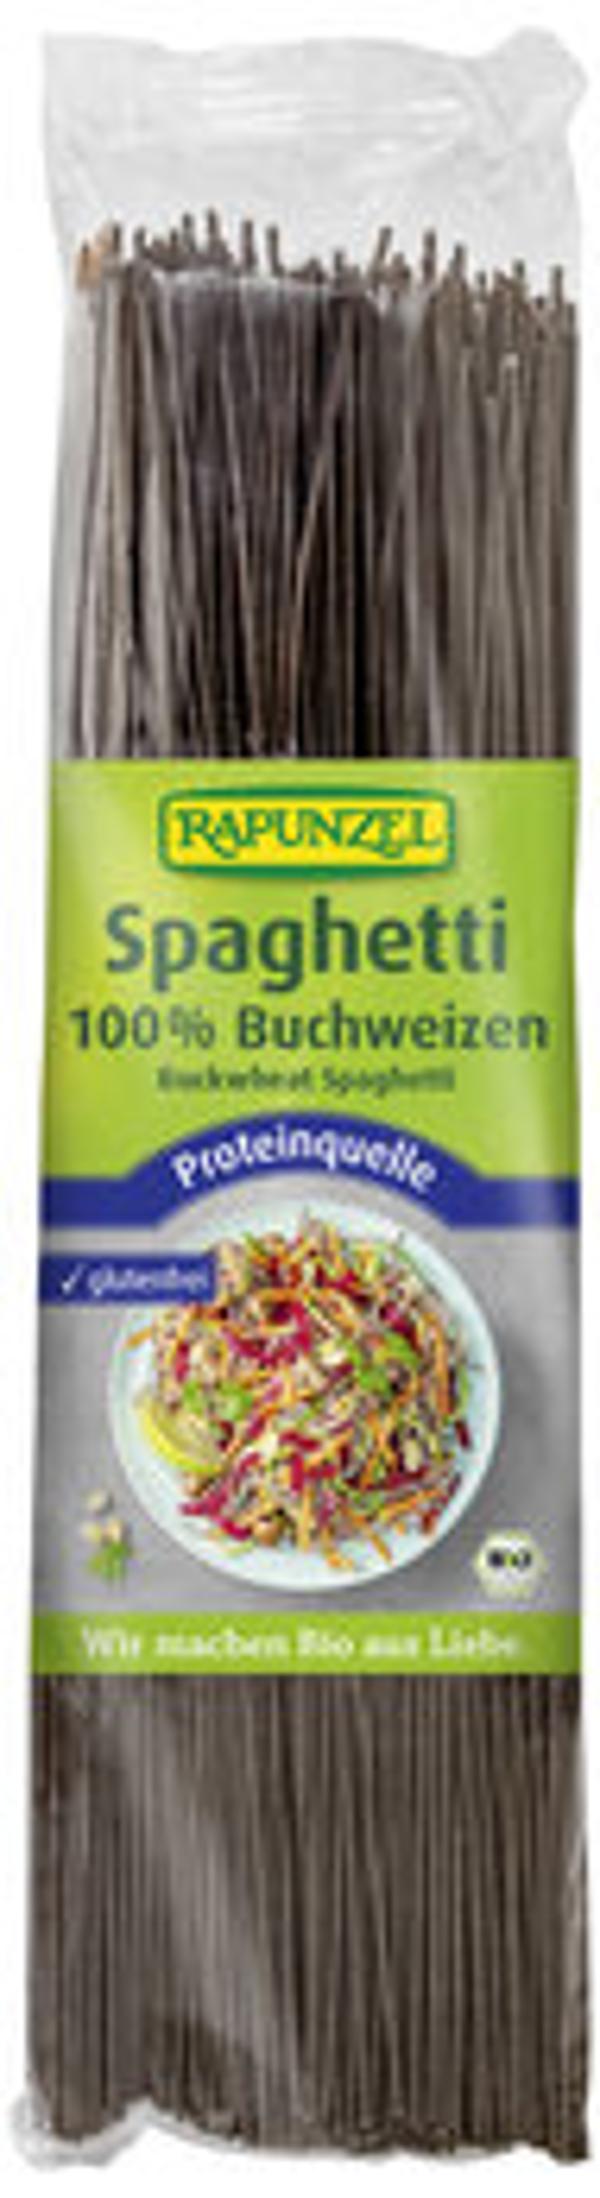 Produktfoto zu Buchweizen Spaghetti, 250 g